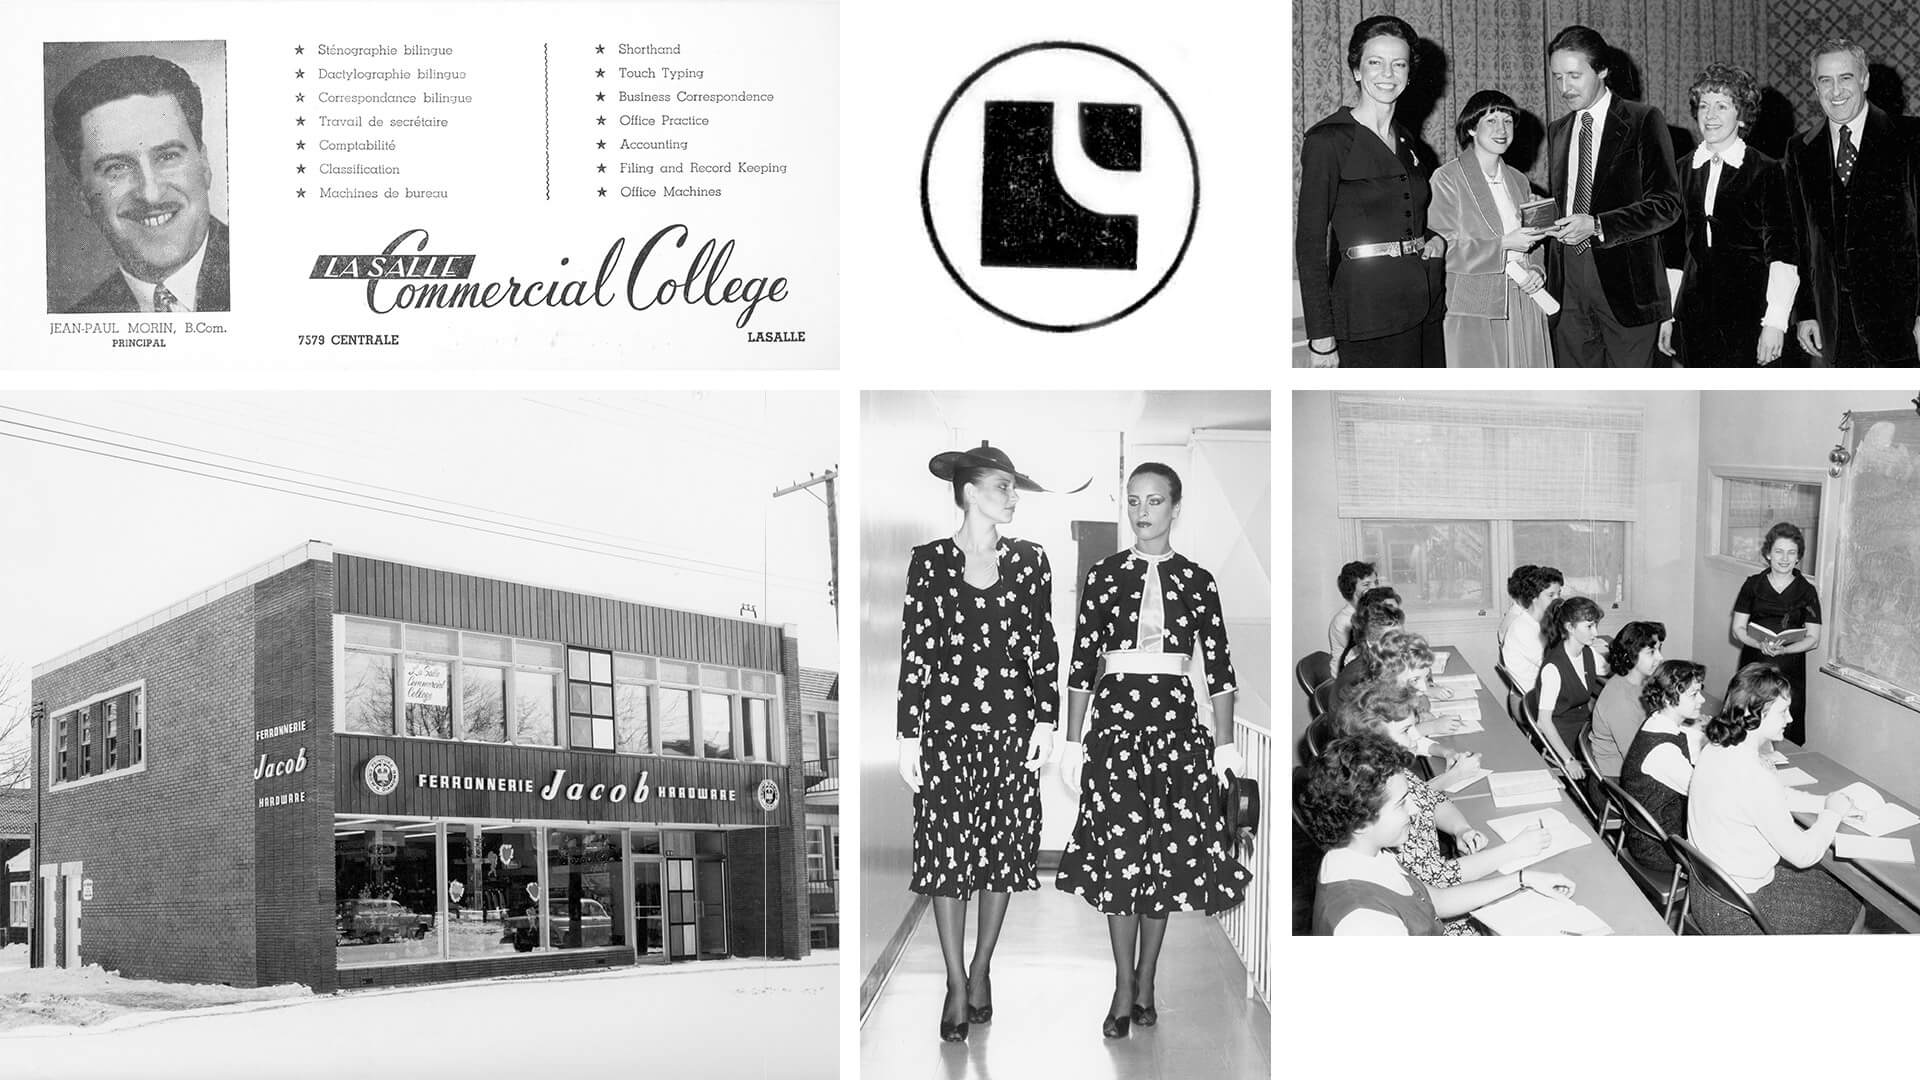 Un collage présentant l'enseignement professionnel, incluant une publicité d'établissement, des étudiants en formation pratique, et un cours de commerce, reflétant les pratiques éducatives du milieu du 20e siècle.